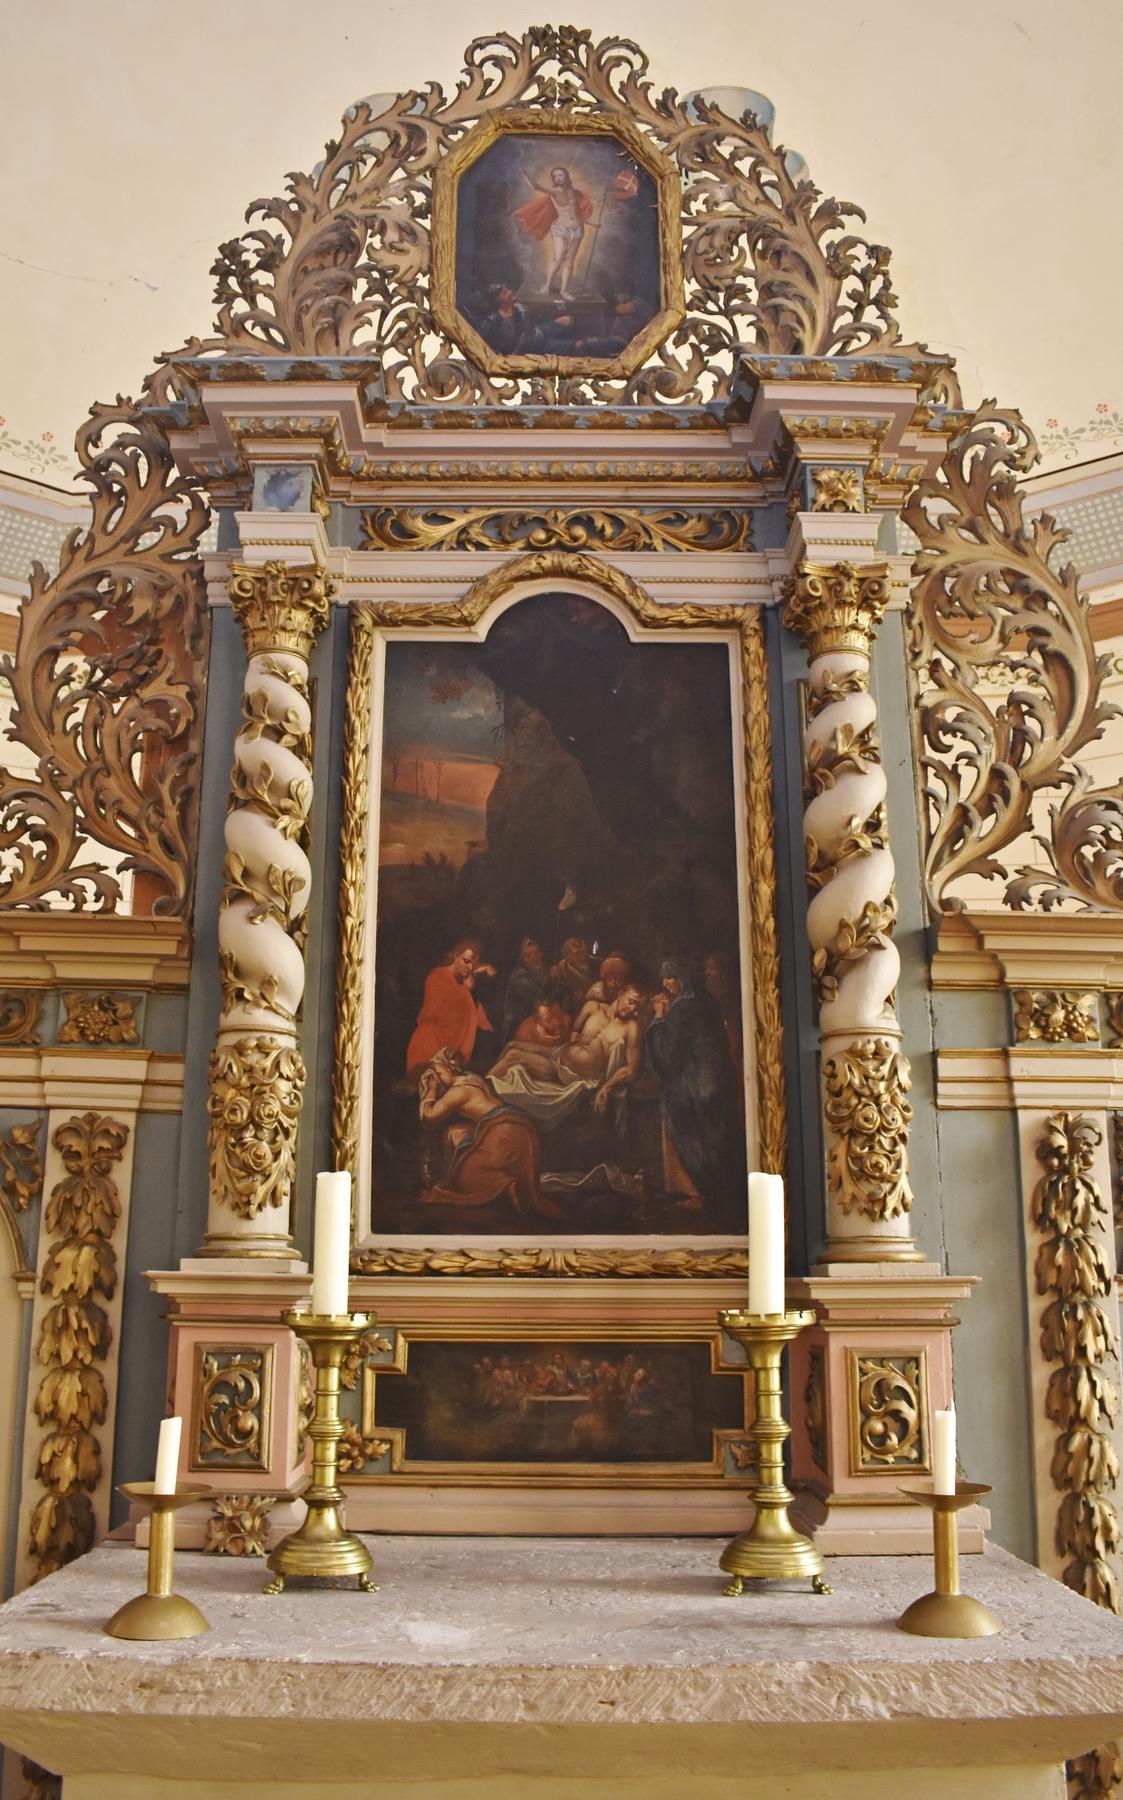 Der Altar der Gunsleber Dorfkirche stammt aus dem Jahr 1711, war also schon in der Vorgängerkirche des heutigen Gotteshauses. Geprägt wird der barocke Altar von reichlich Schnitzereien sowie von zwei Gemälden, auf denen unten die Grablegung Jesu und oben 